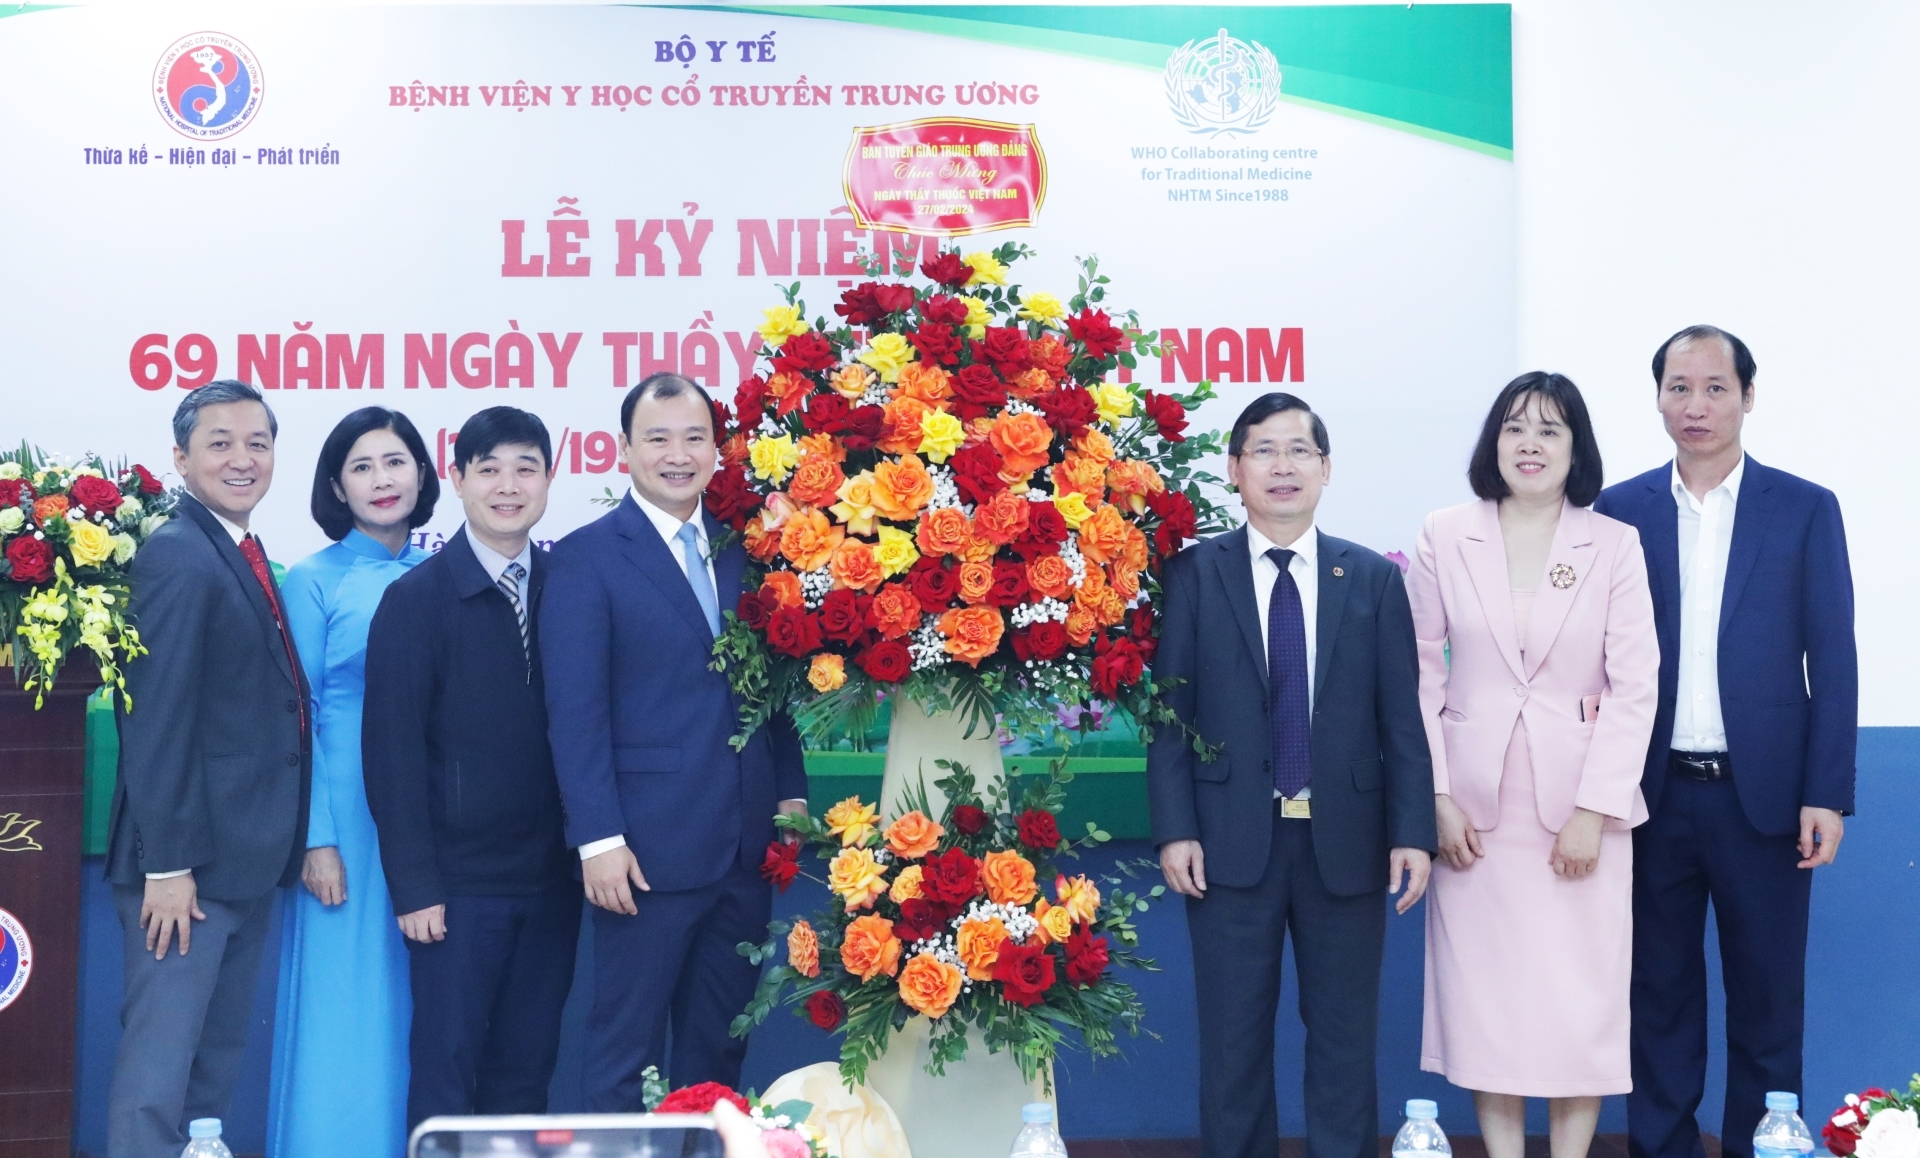 Đồng chí Lê Hải Bình tặng hoa chúc mừng Bệnh viện Y học cổ truyền Trung ương nhân kỷ niệm 69 năm Ngày Thầy thuốc Việt Nam (27/2/1955 - 27/2/2024).